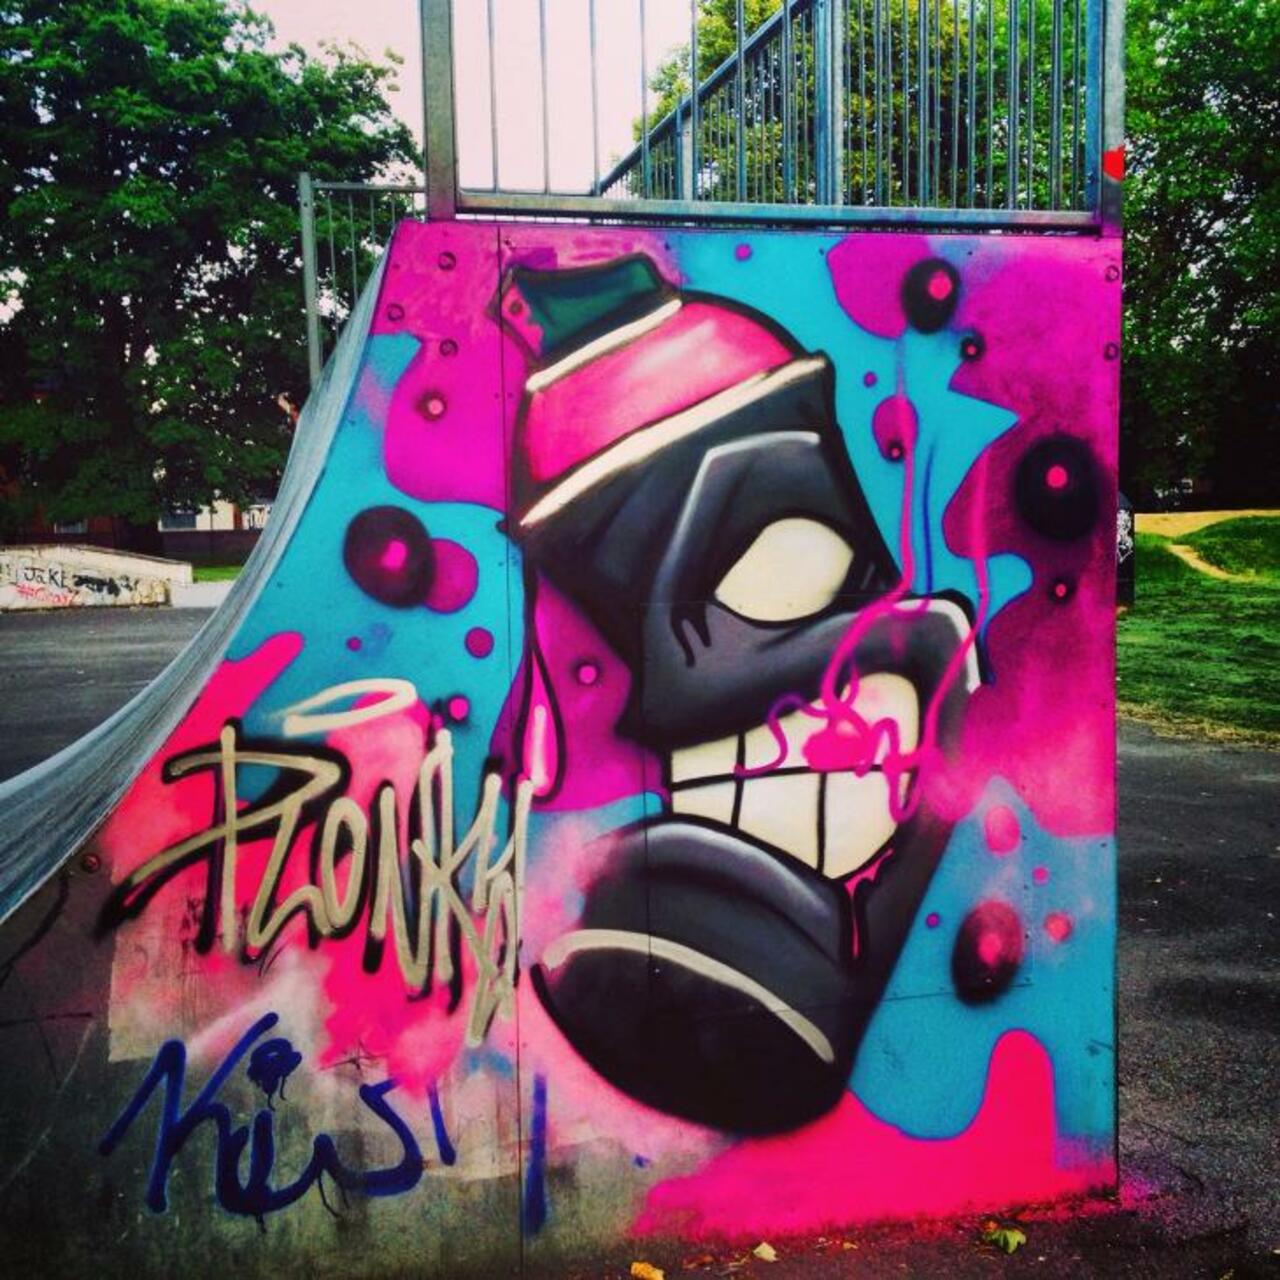 Found a few months back at #Gloucester skatepark #skatelife #graffiti #streetart artist unknown @rtglos http://t.co/9bQjWbpr7K